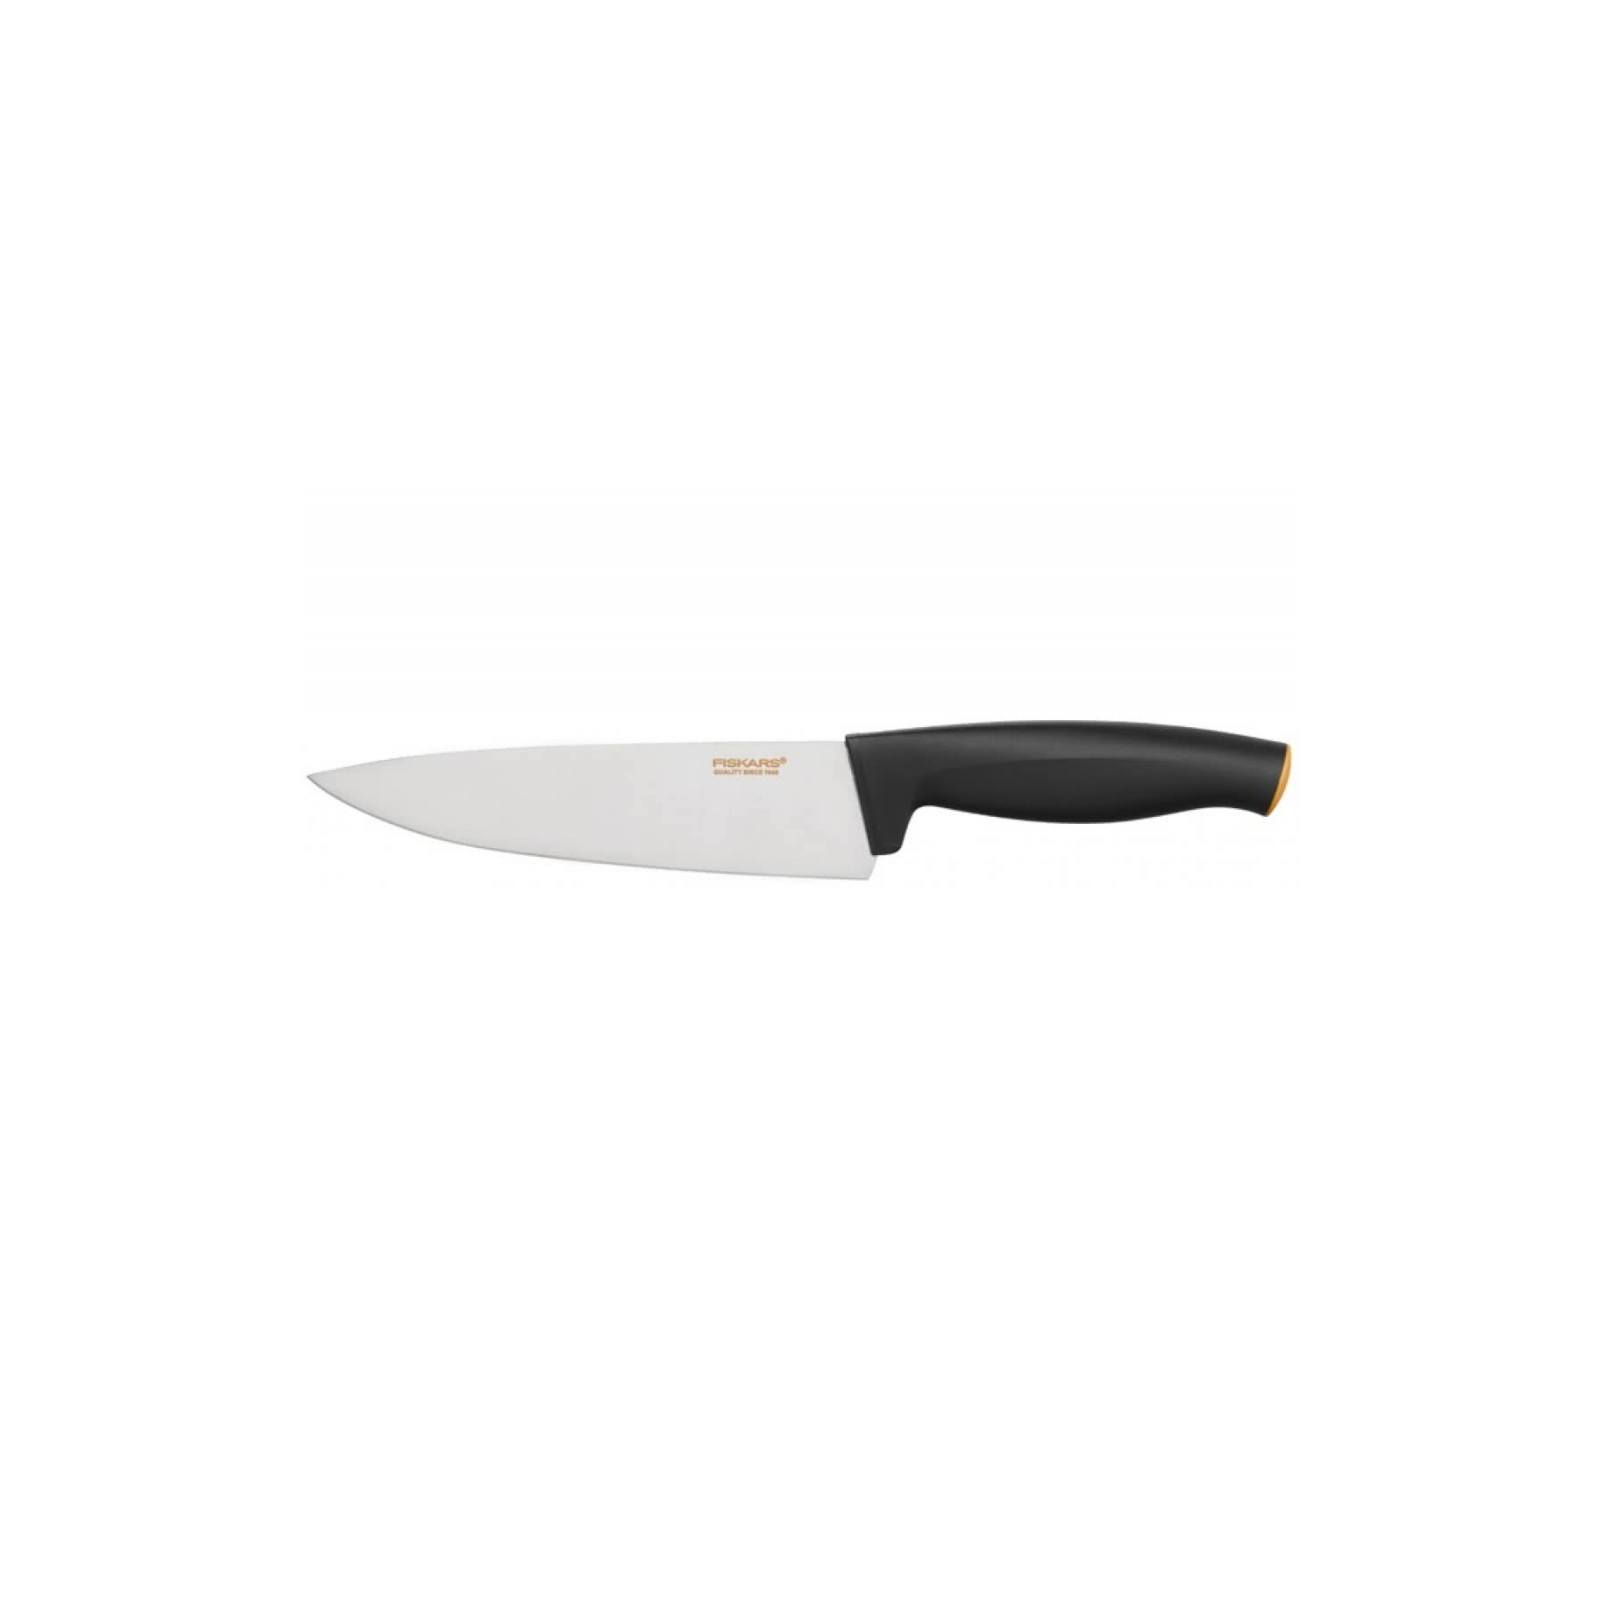 Кухонный нож Fiskars Functional Form поварской 16 см Black (1014195)